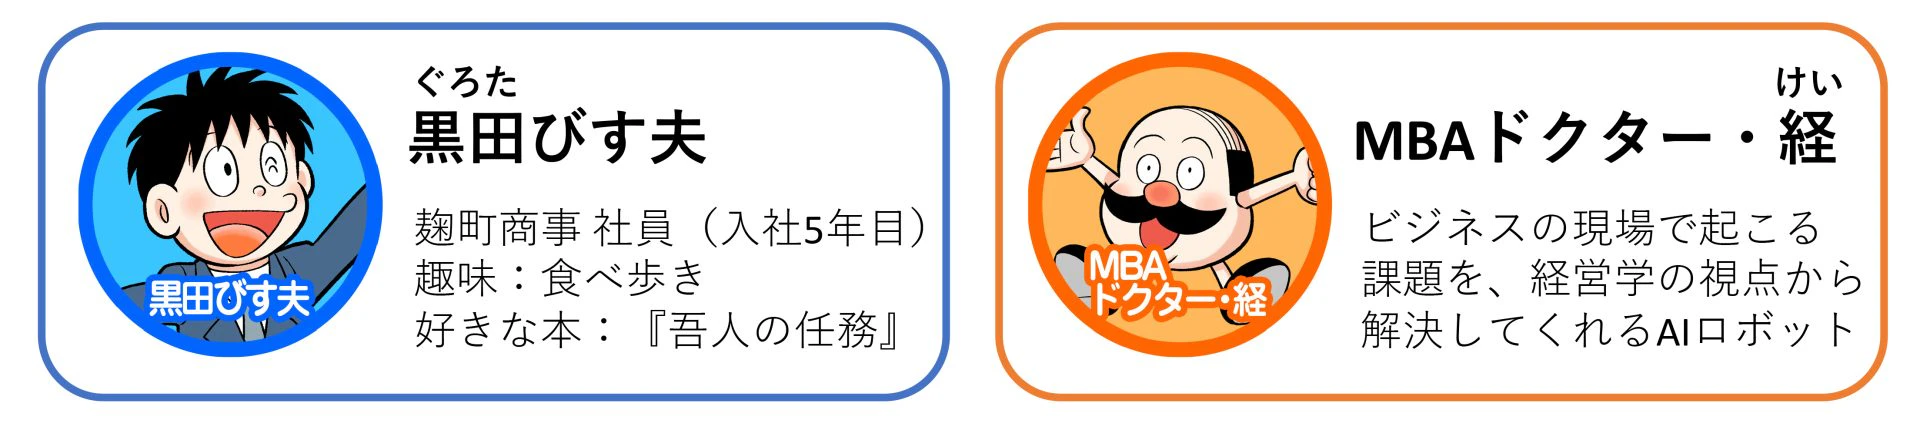 「マンガでわかるMBA100の基本」の登場人物 黒田びす夫 MBAドクター・経